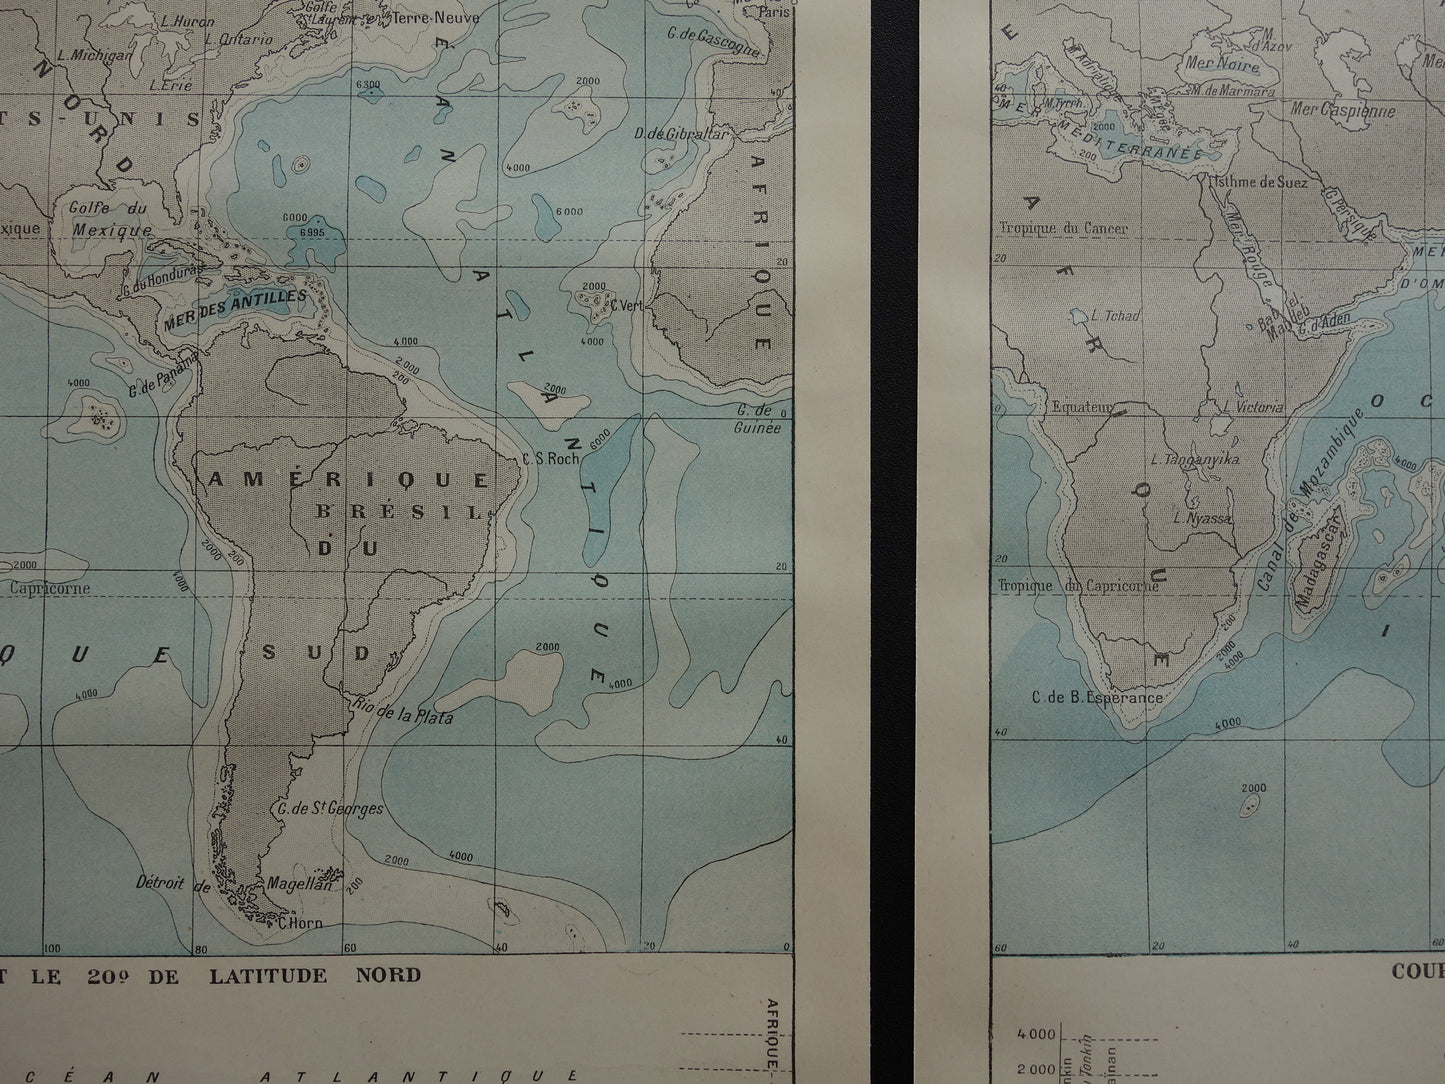 Oude wereldkaart van Oceanen 1902 originele antieke kaart / zeekaart zeediepte